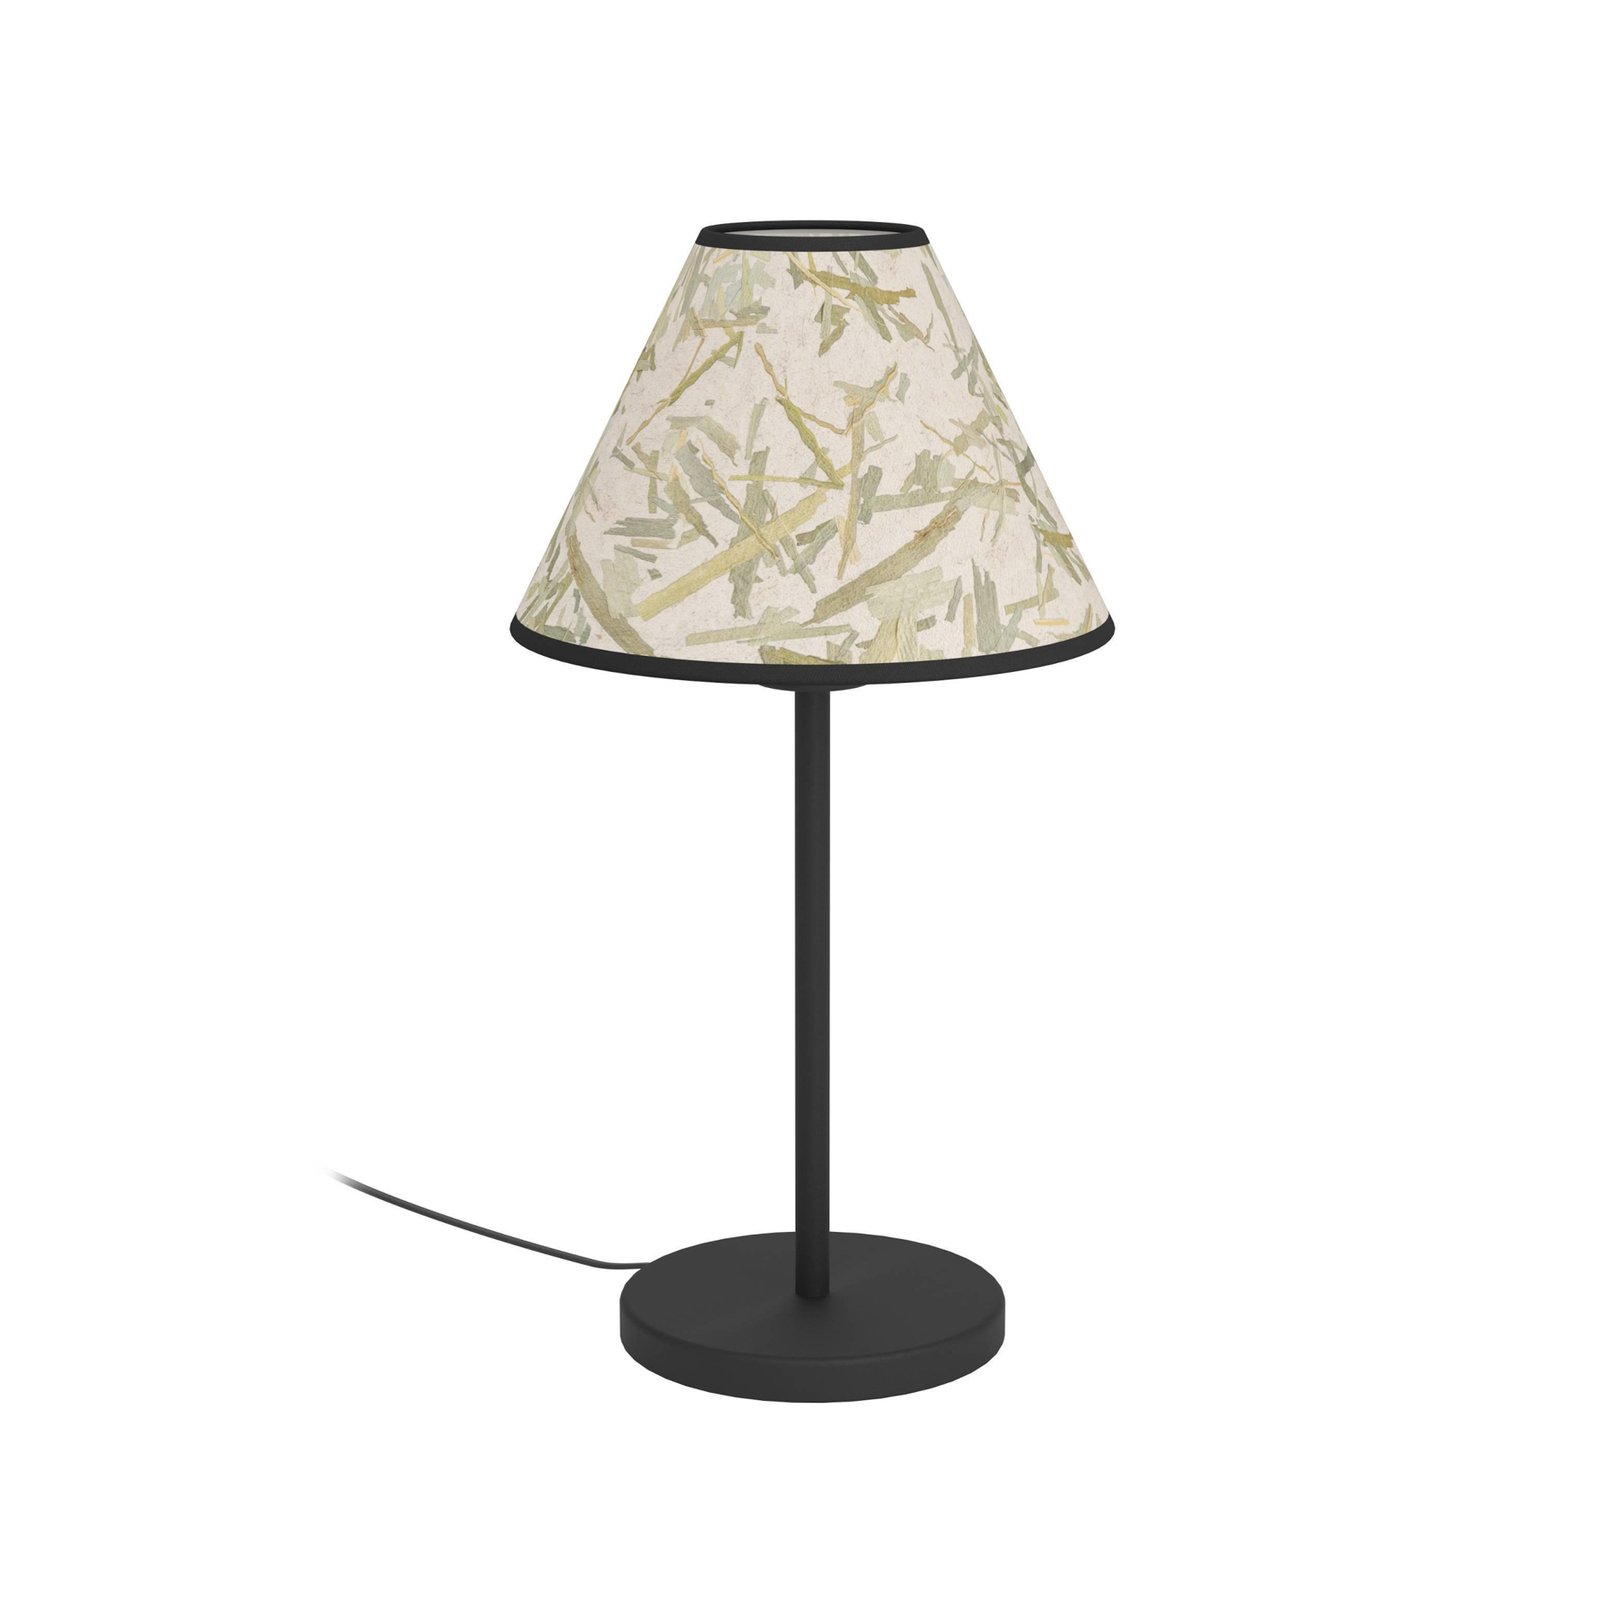 Oxpark bordlampe, høyde 41,5 cm, grønn/hvit/svart